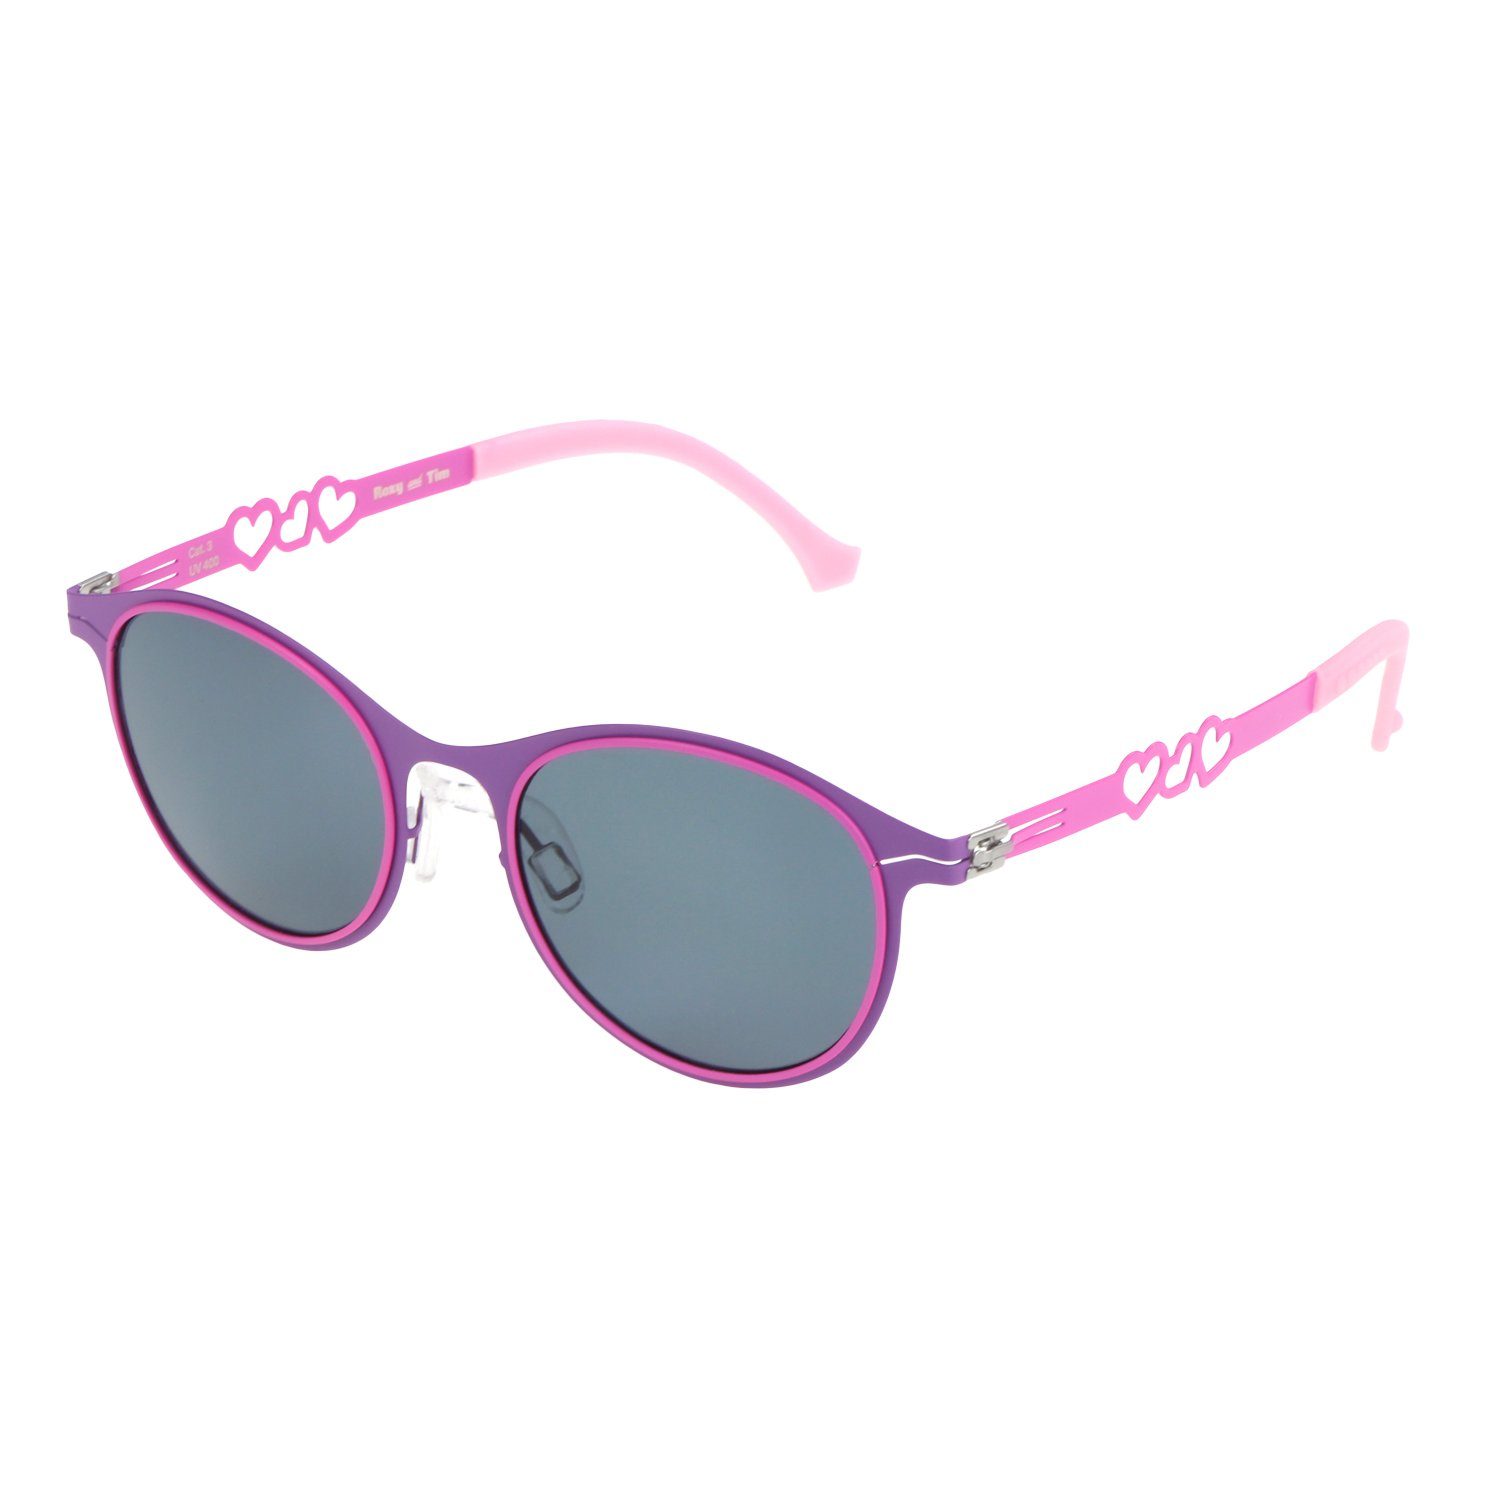 ActiveSol SUNGLASSES Sonnenbrille Kinder Sonnenbrille, Private Eyes, 3-8 Jahre pulverbeschichteter Metallrahmen, weiche Ohrenschoner, leicht 15g Pink - Hearts